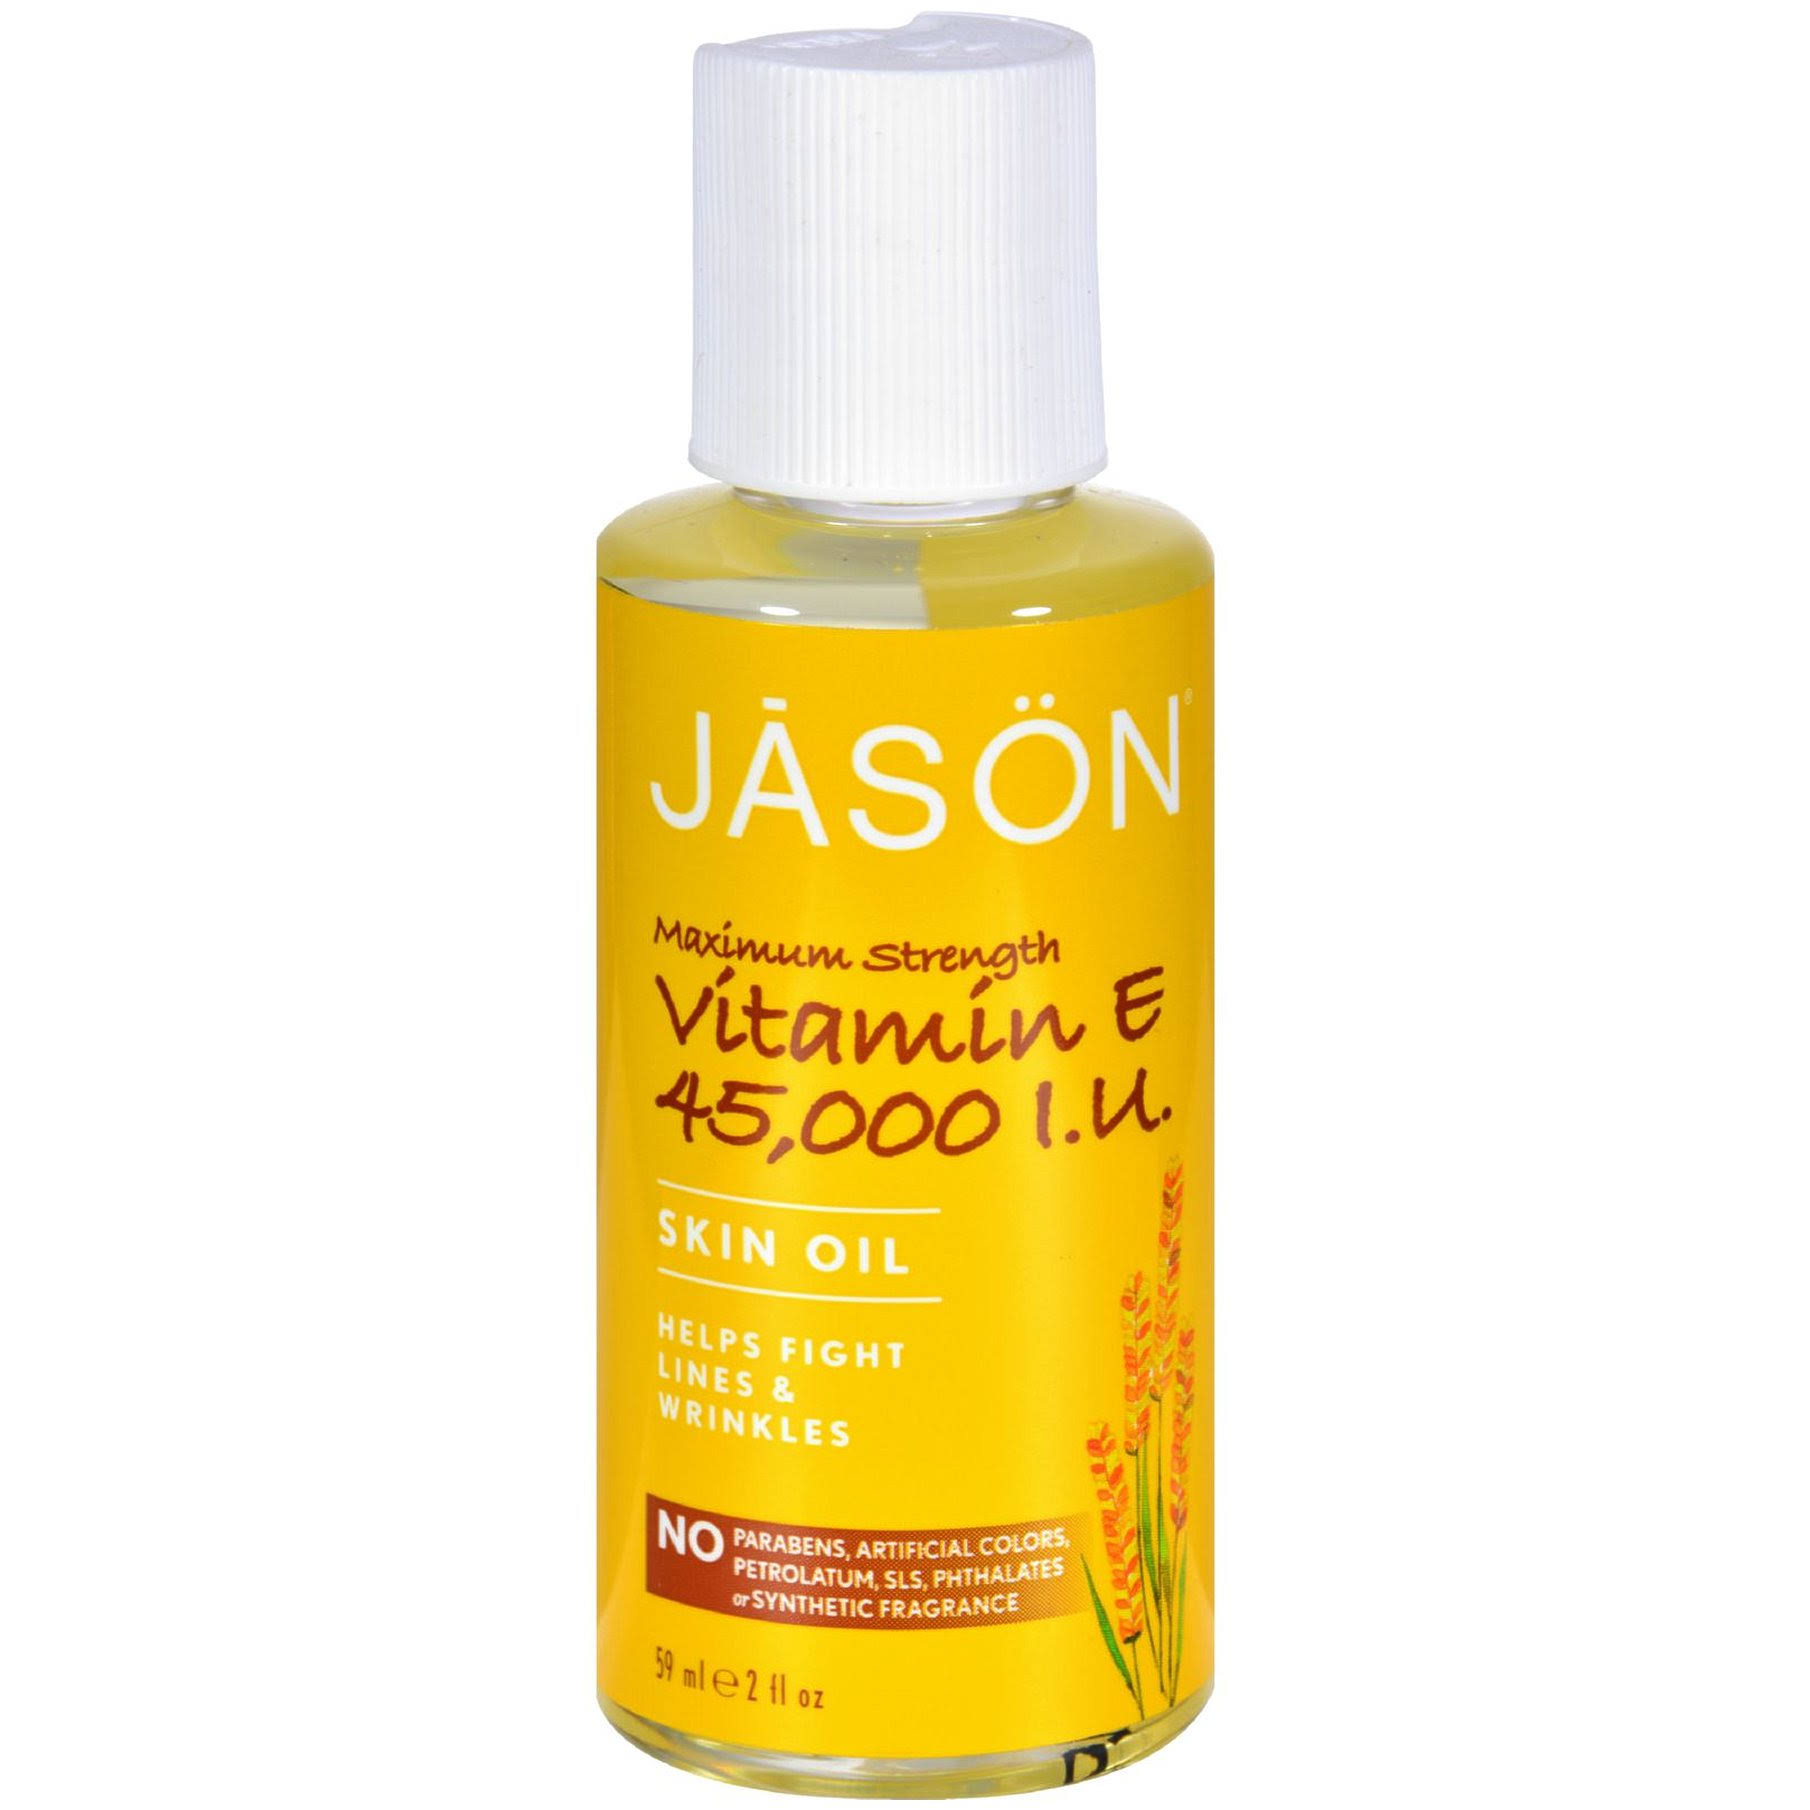 Jason Vitamin E Pure Natural Skin Oil